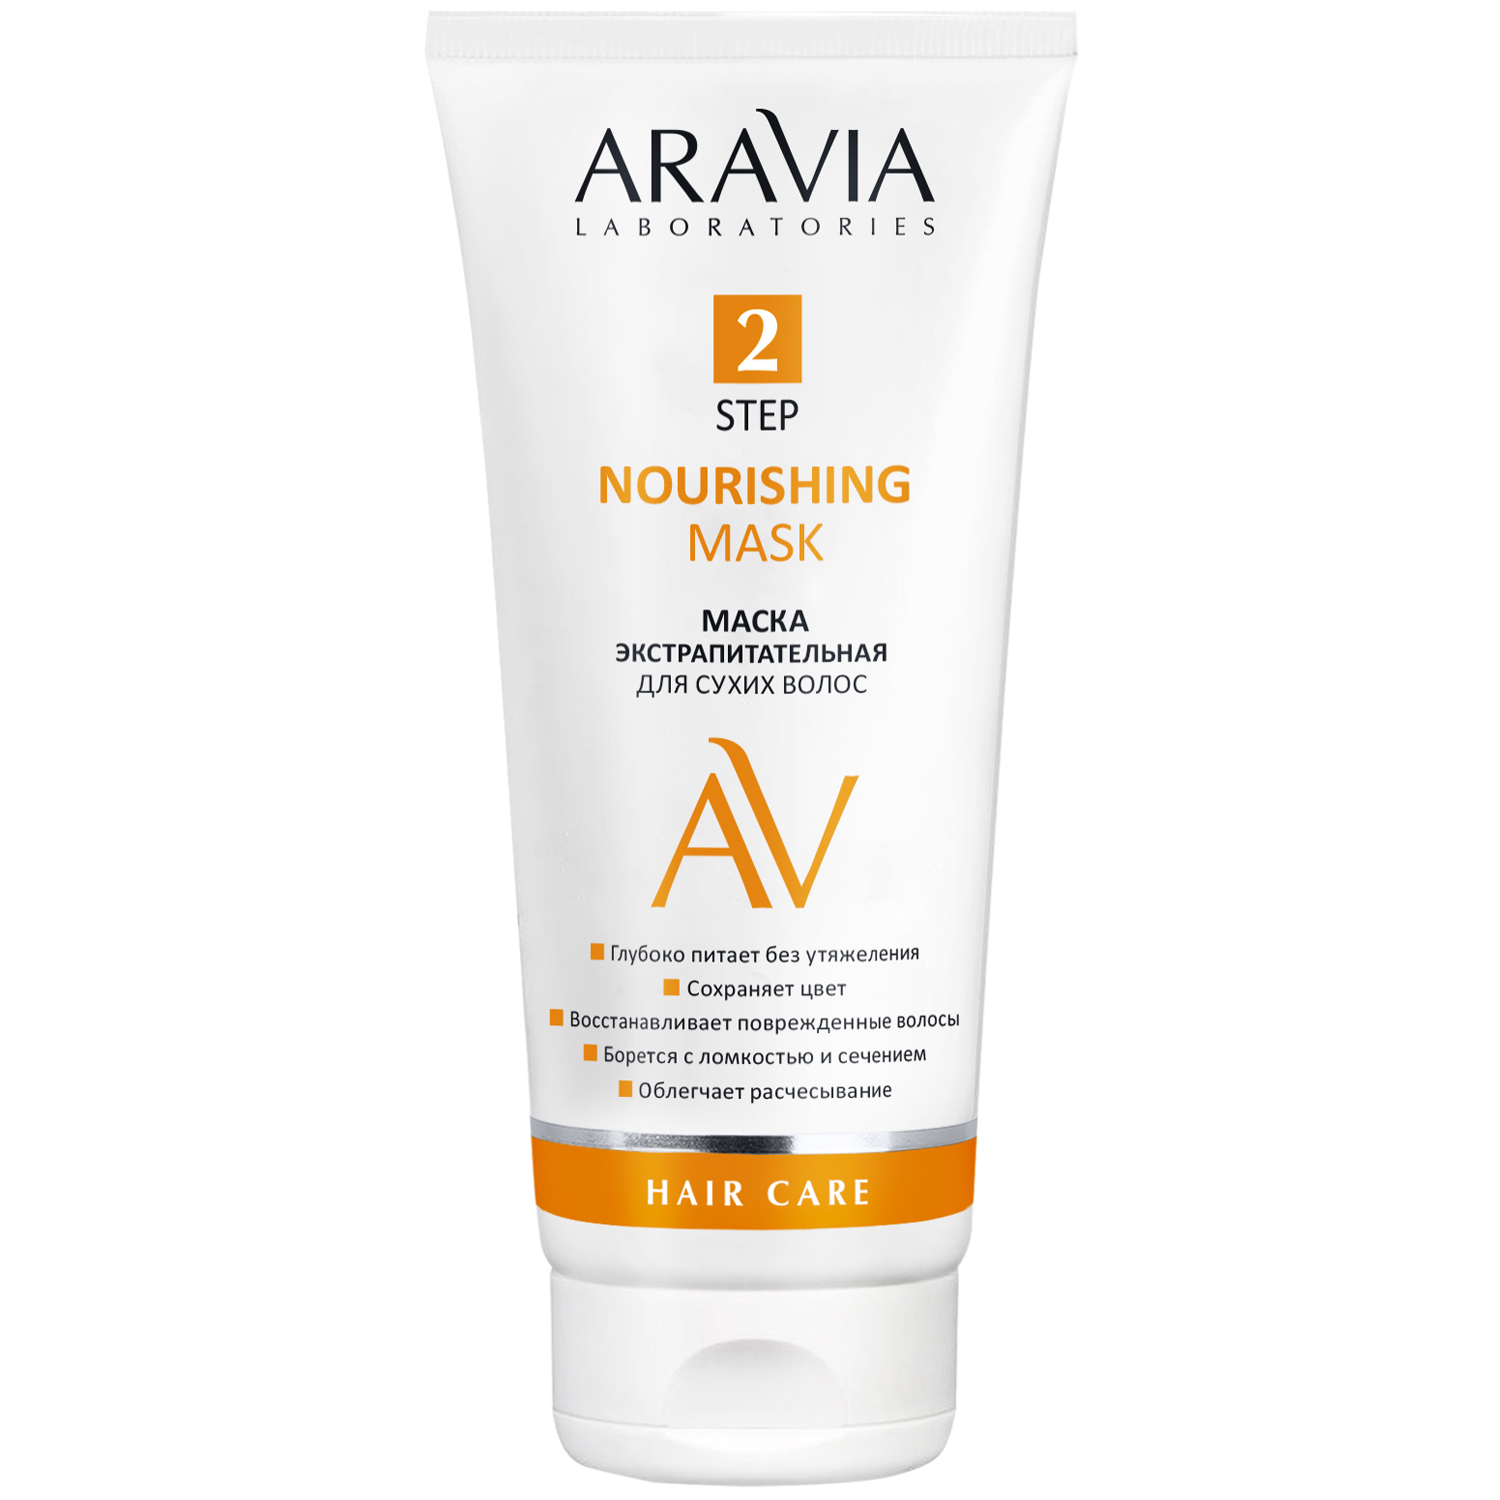 Aravia Laboratories Маска экстрапитательная для сухих волос Nourishing Mask, 200 мл (Aravia Laboratories, Уход за волосами)